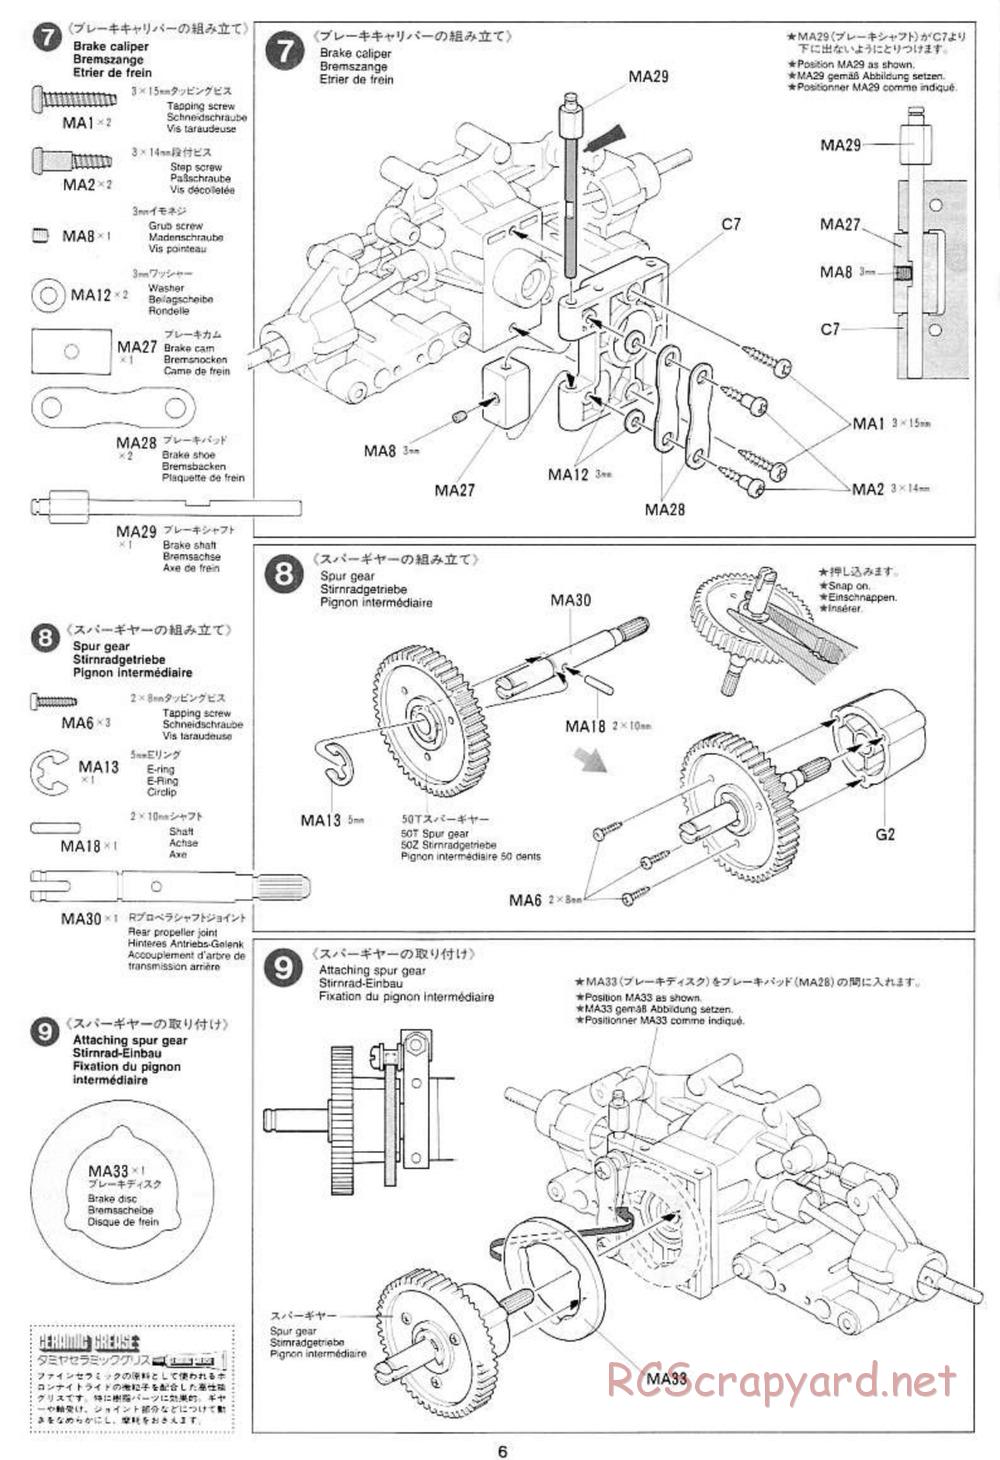 Tamiya - Mercedes CLK GTR Team Sportswear - TG10 Mk.1 Chassis - Manual - Page 6